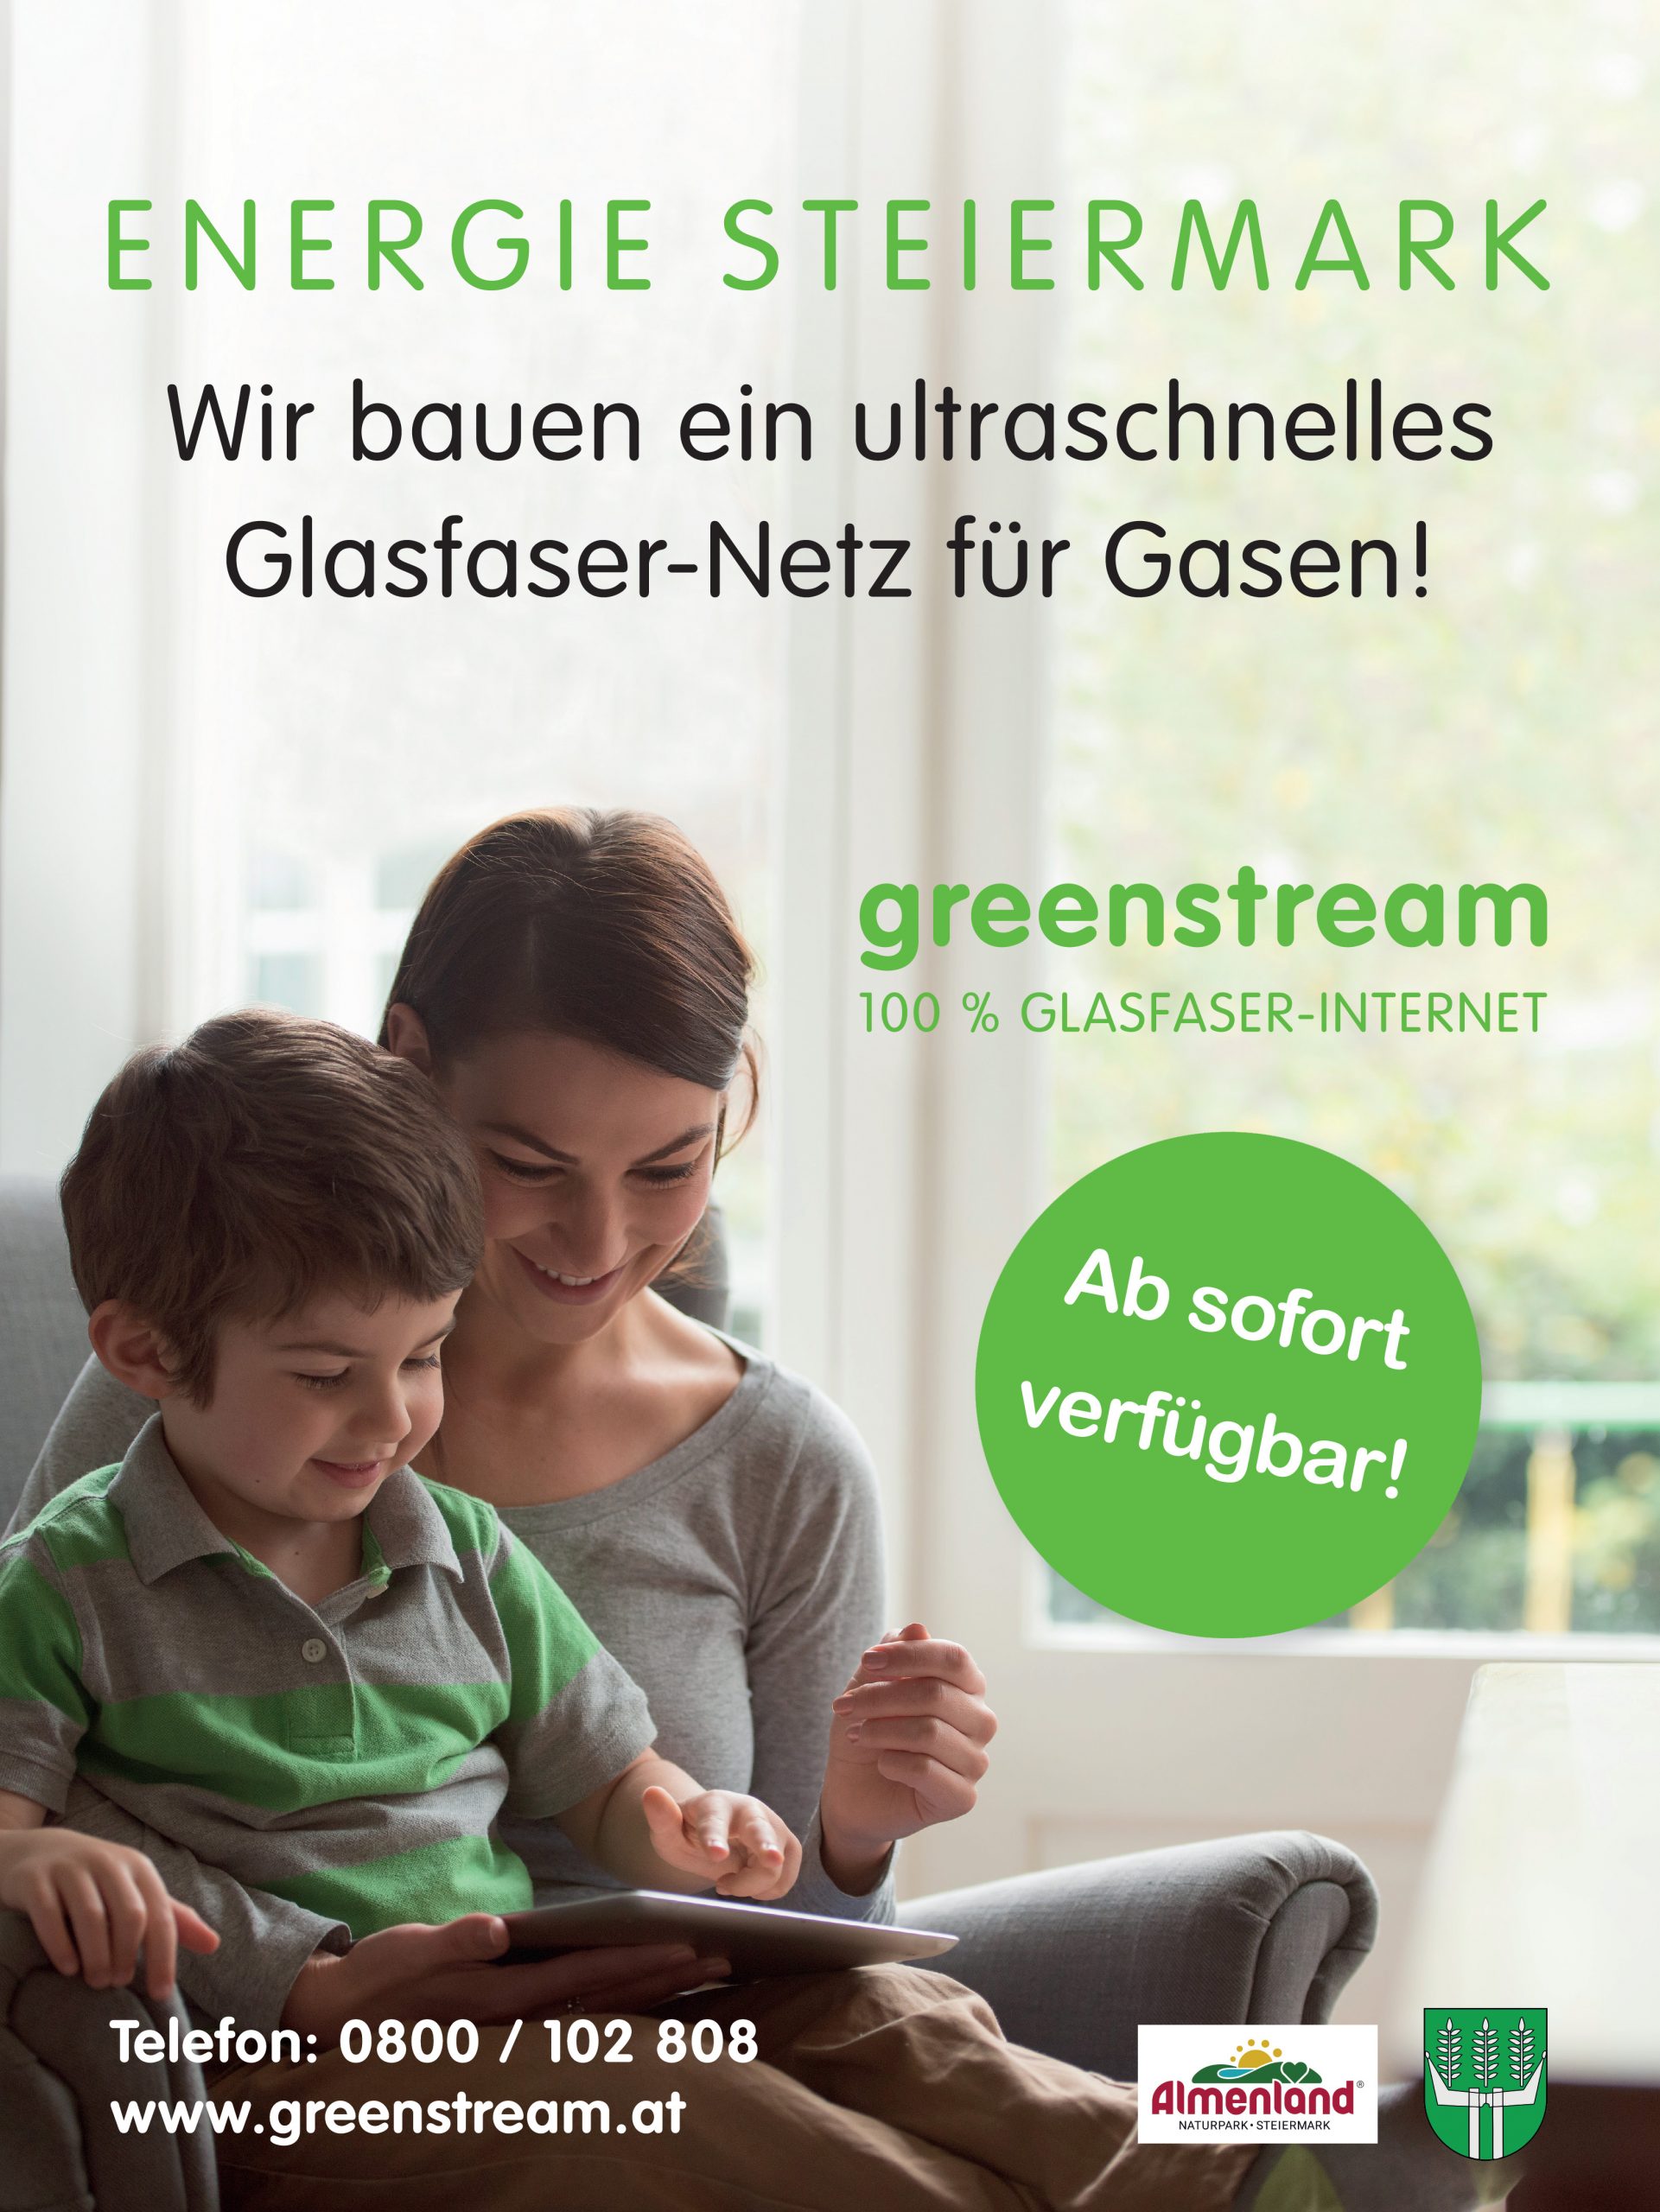 Greenstream